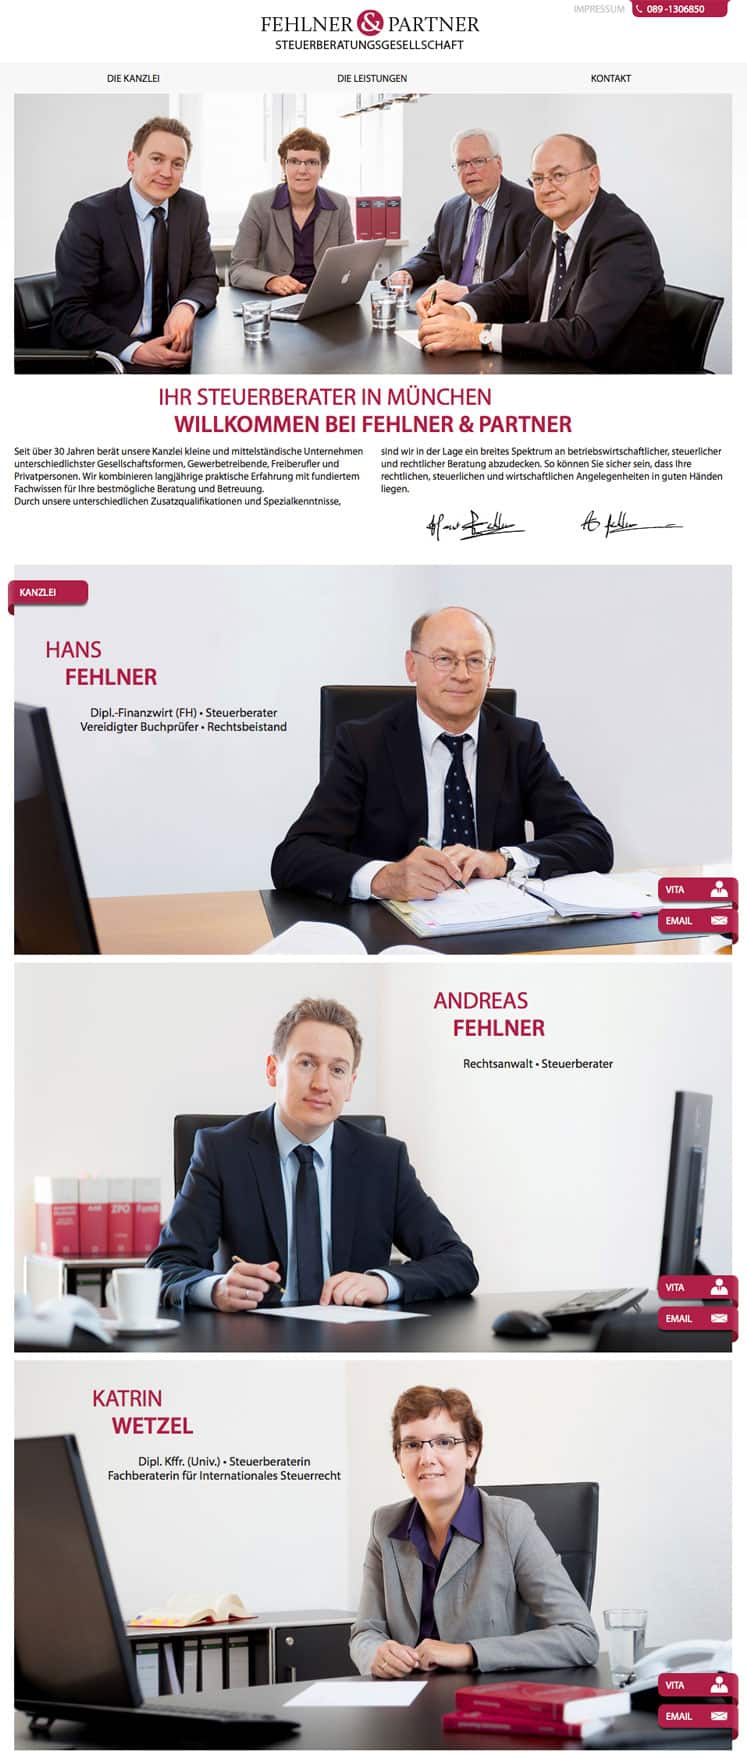 Steuerberater München - Fehlner und Partner